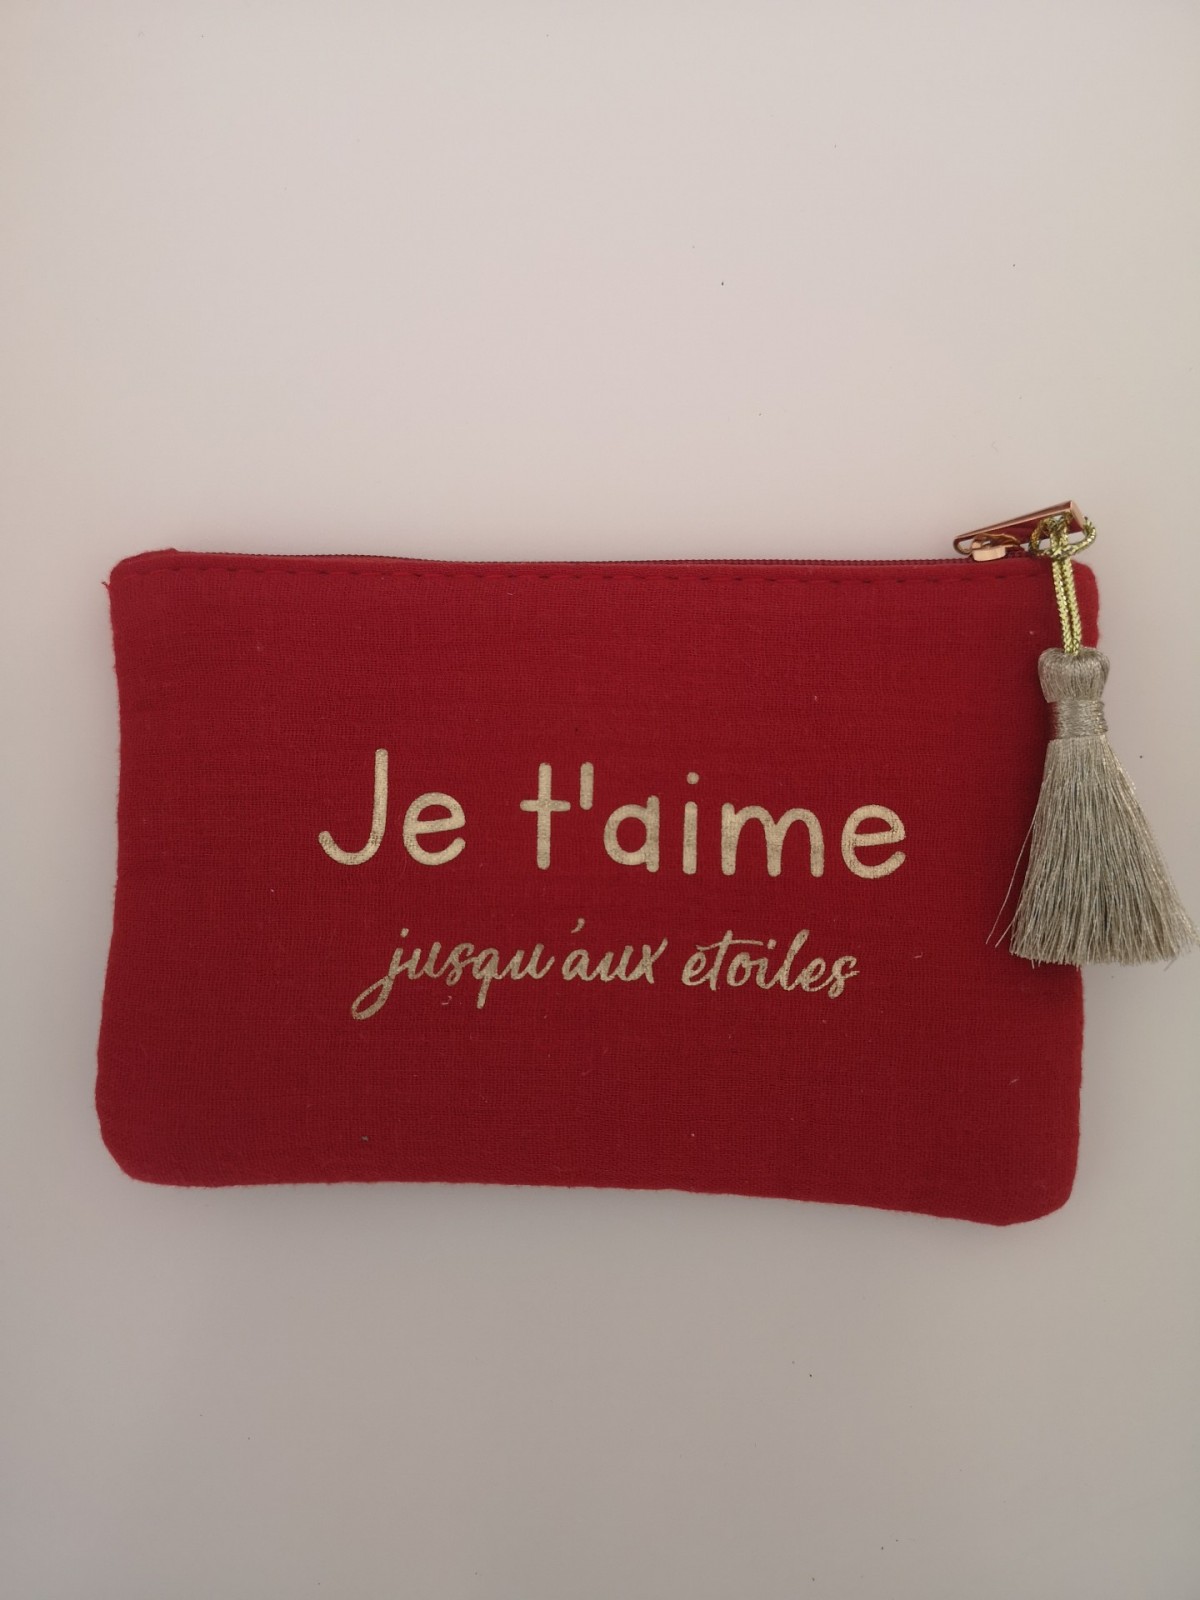 Pochette zippée rouge et dorée avec pompon l 1 vue de face l Tilleulmenthe mode boutique de vêtements femme en ligne